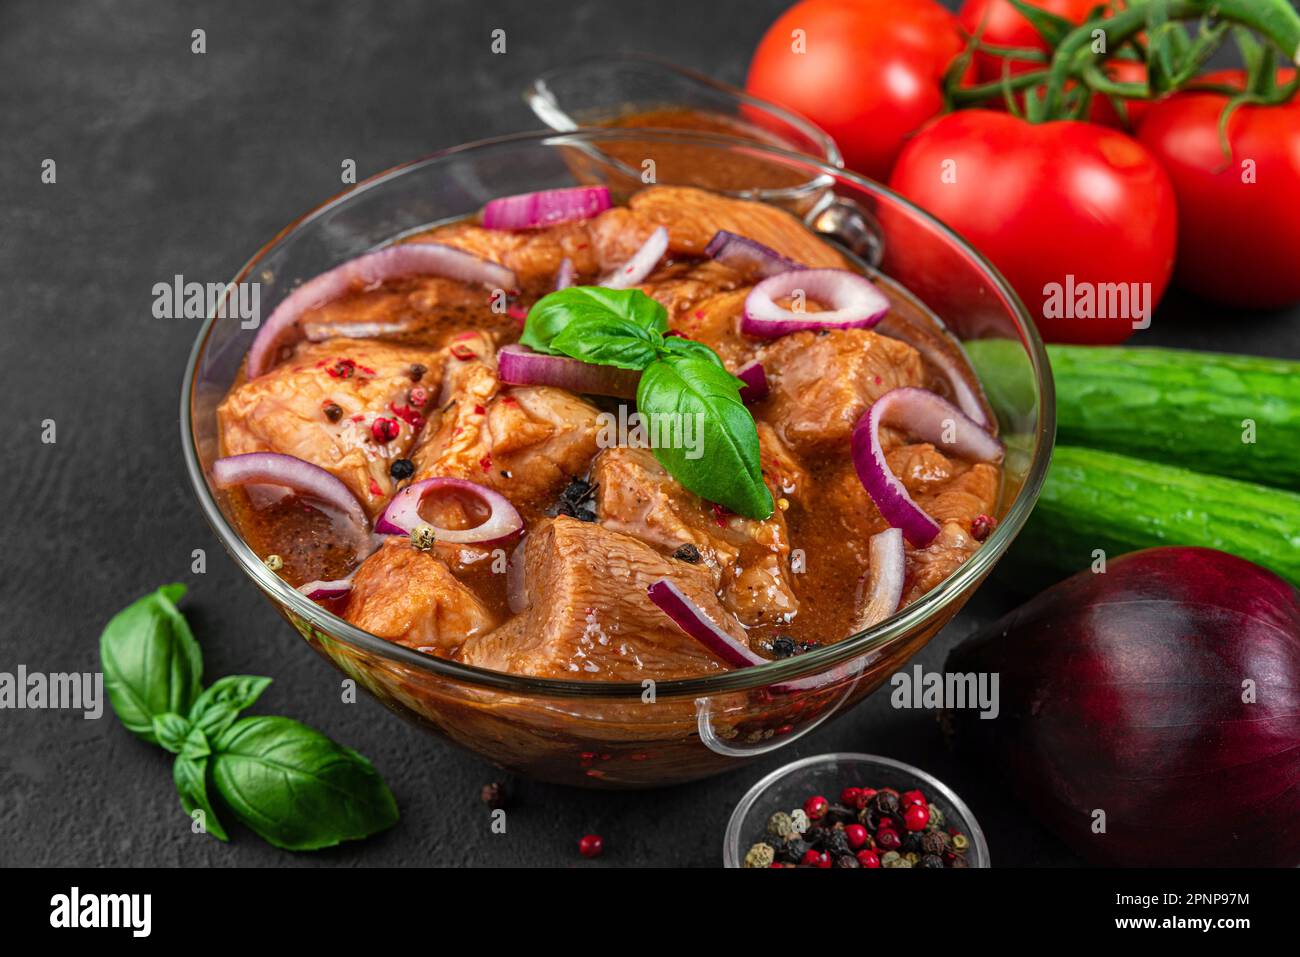 Kebab de porc cru mariné. Barbecue de viande avec des légumes sur fond noir. Cuisson de nourriture pour barbecue ou grill Banque D'Images